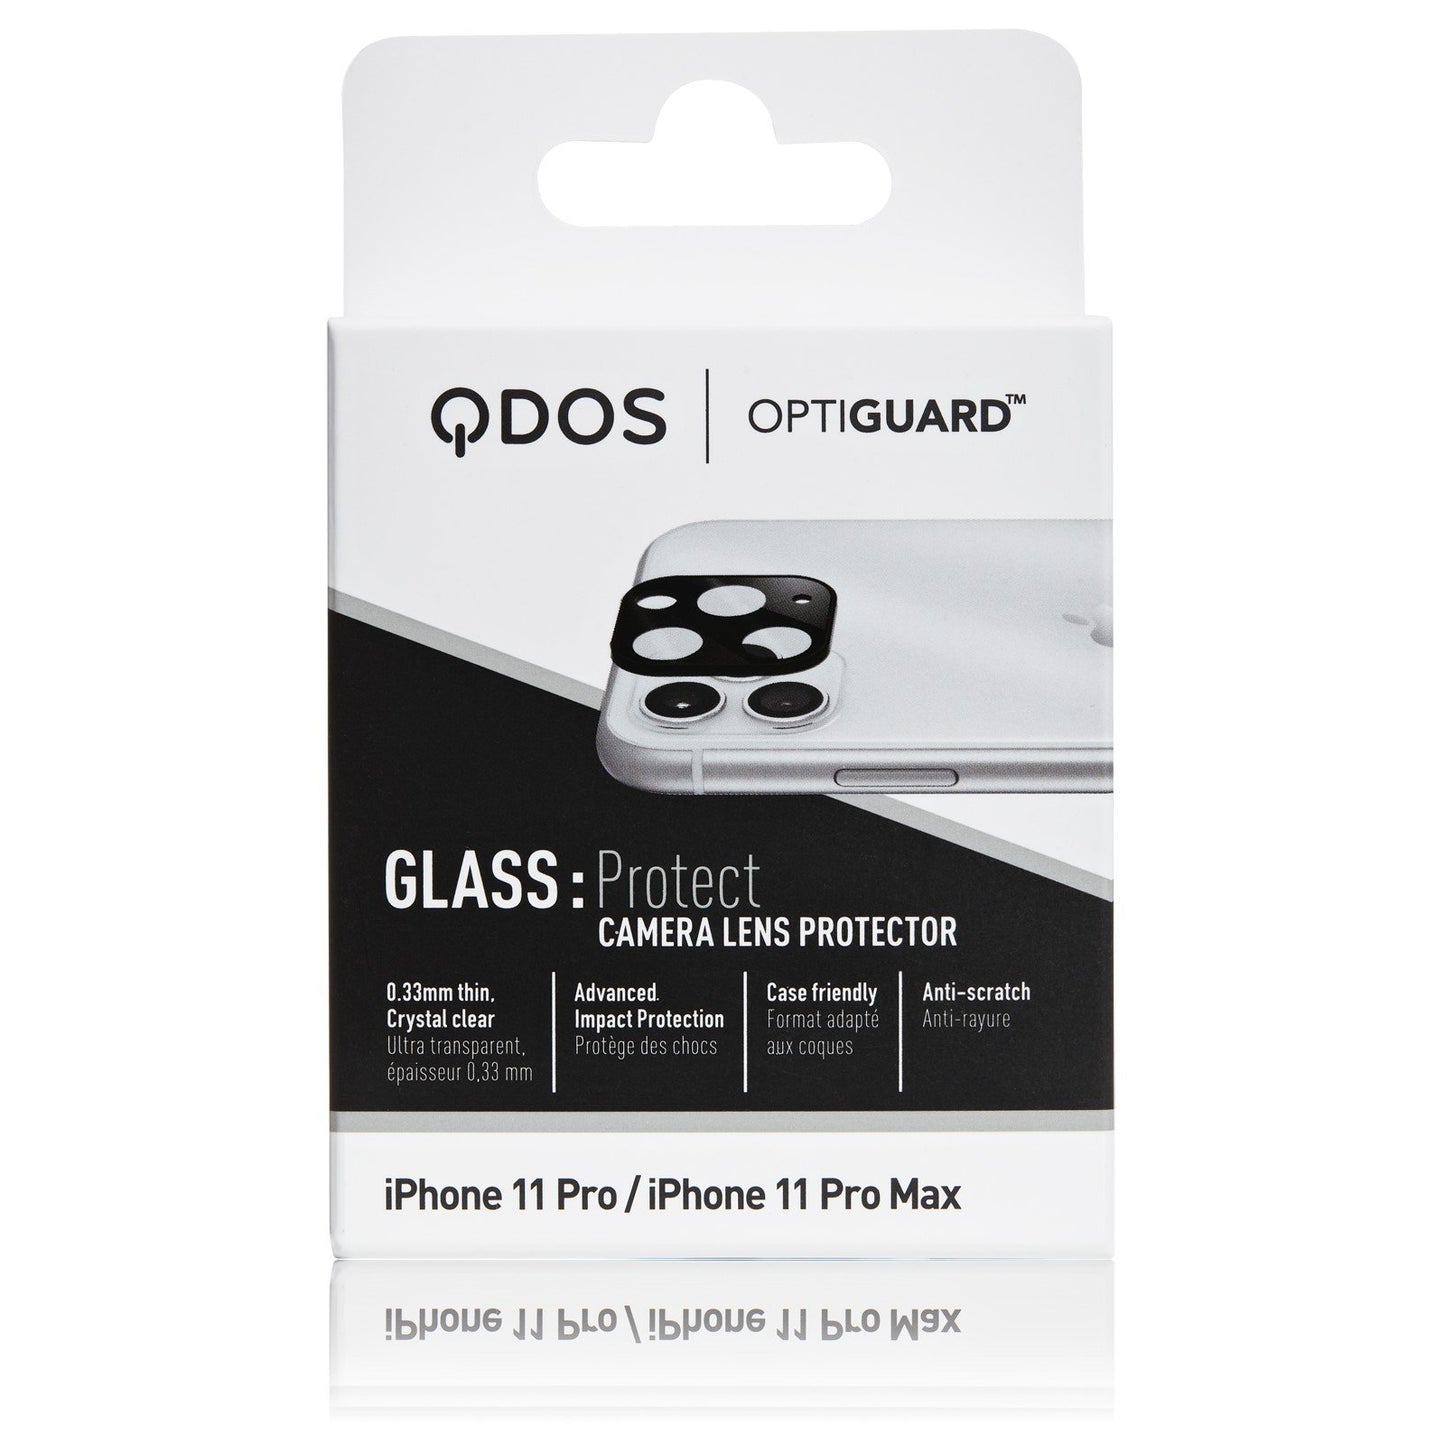 QDOS OptiGuard Camera Lens Protector iPhone 11 Pro / 11 Pro Max